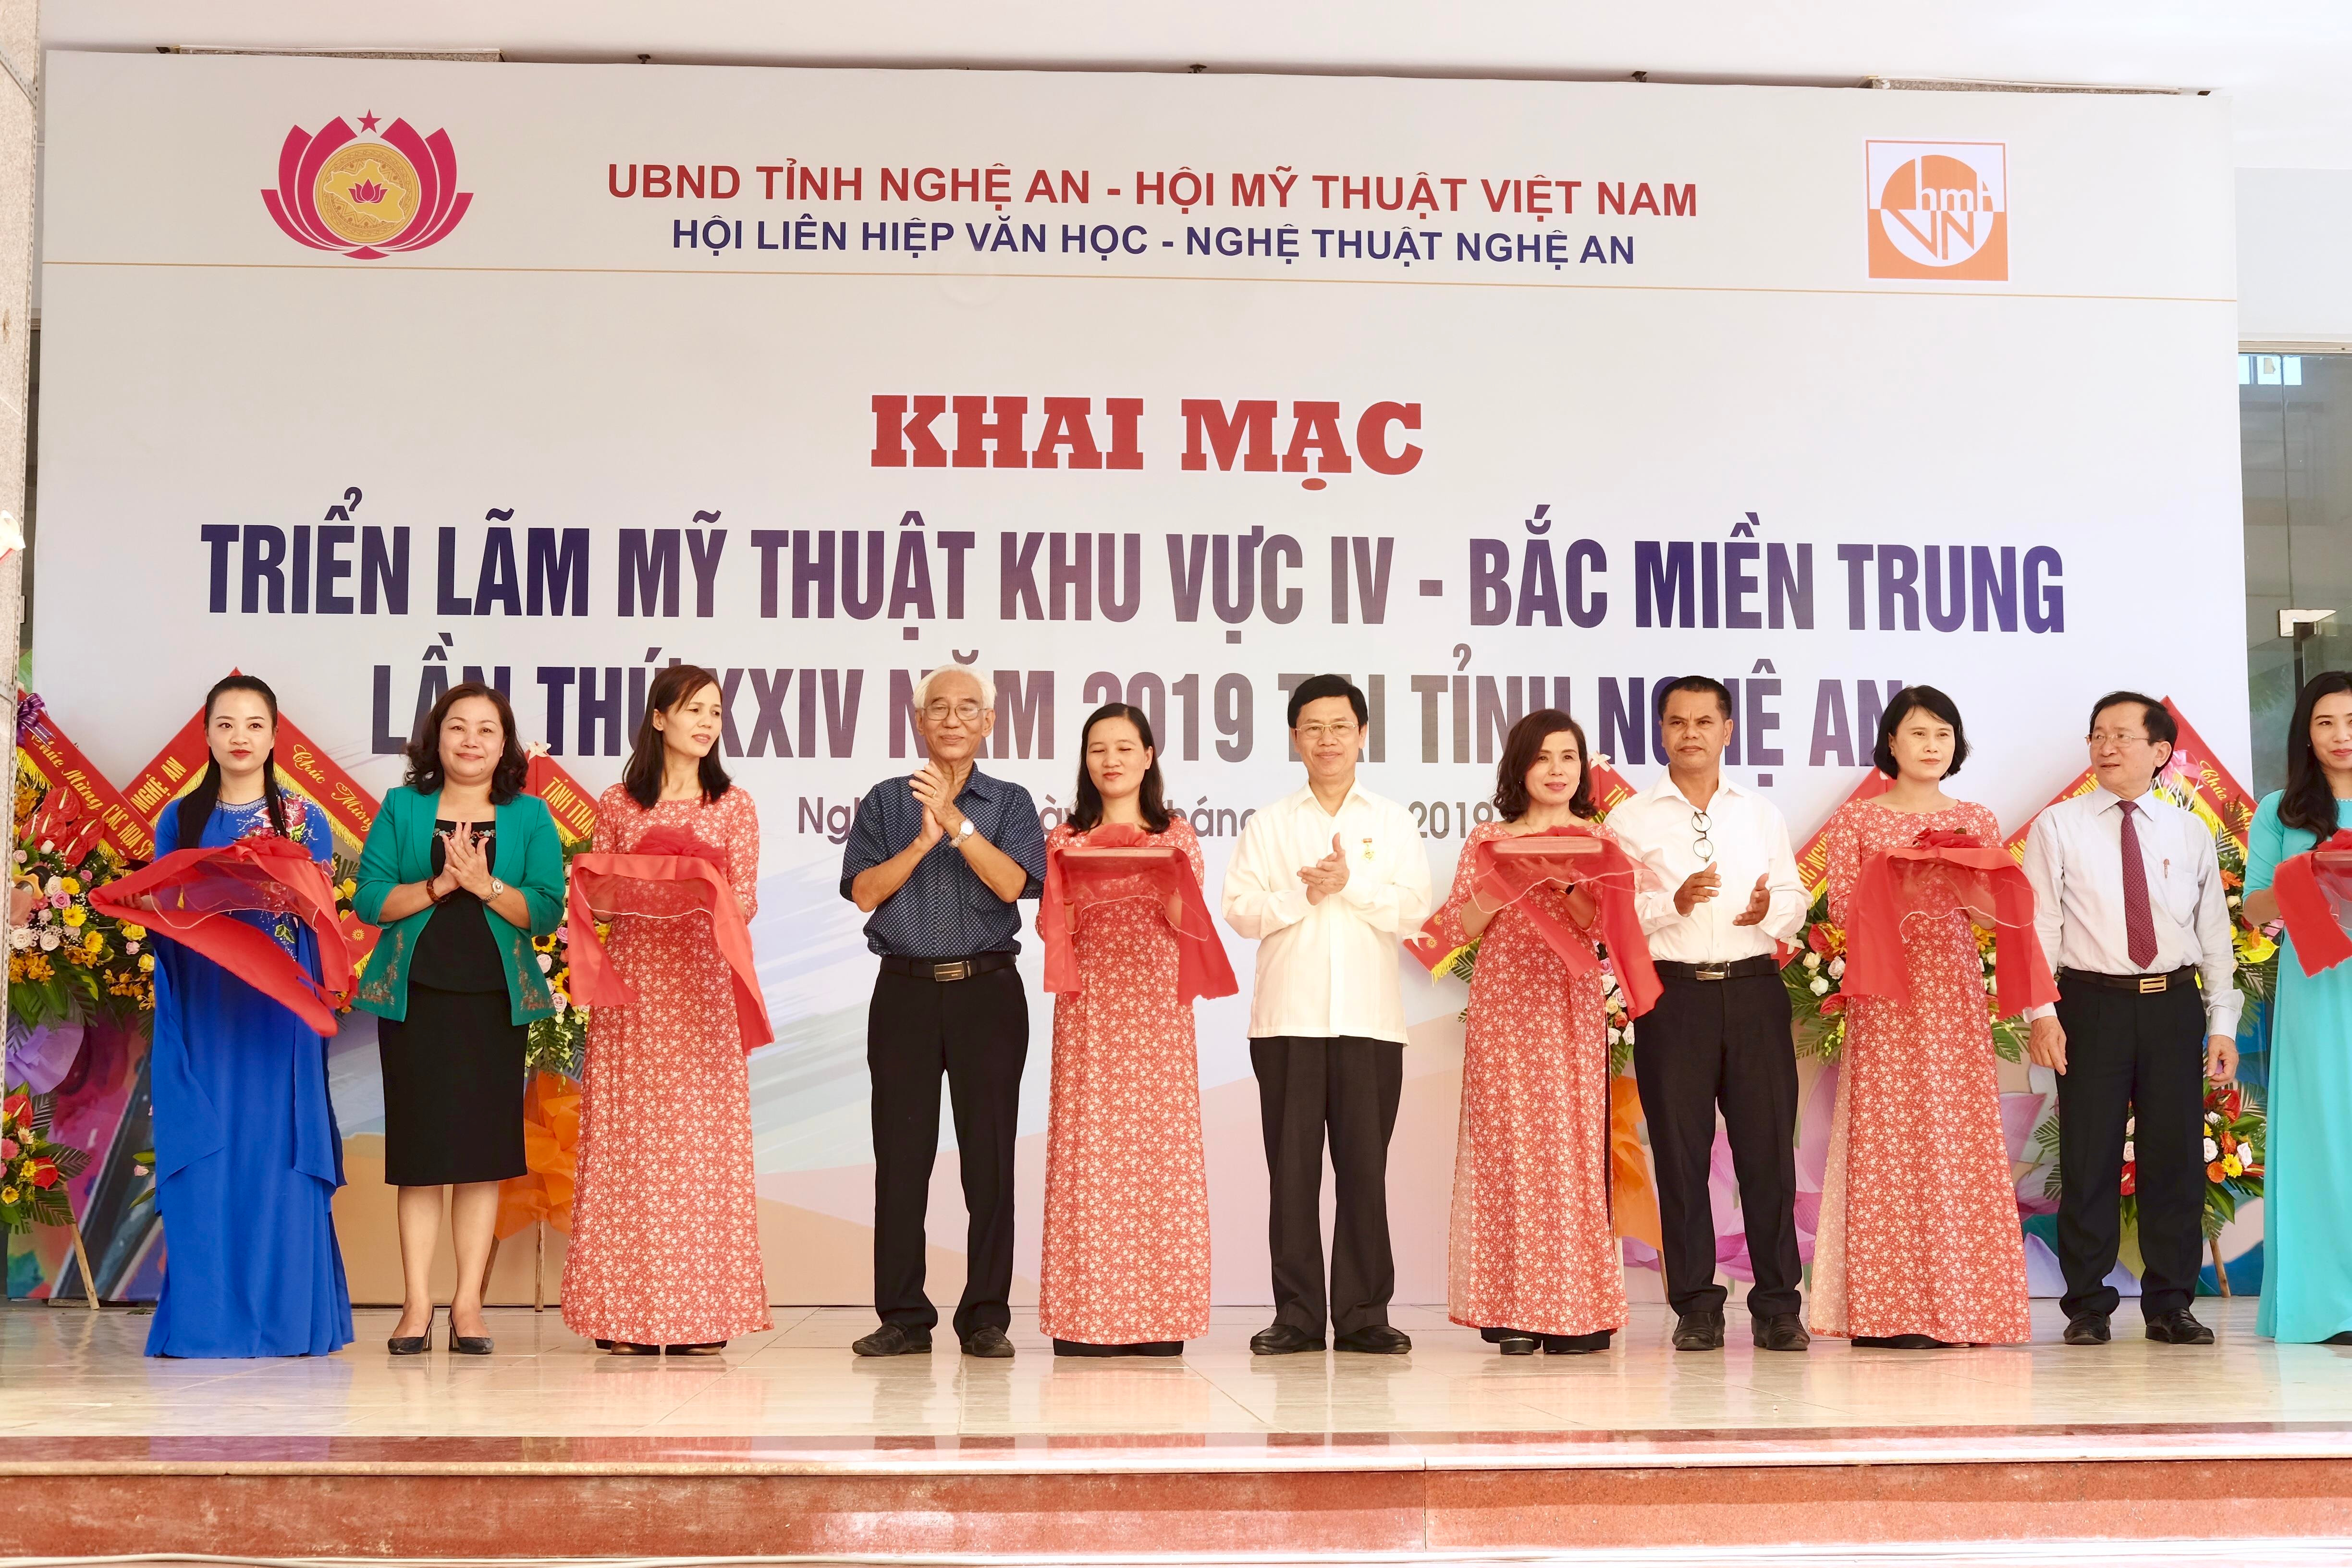 Lãnh đạo tỉnh Nghệ An cùng đại diện Hội Mỹ thuật Việt Nam cắt băng khai mạc triển lãm. 